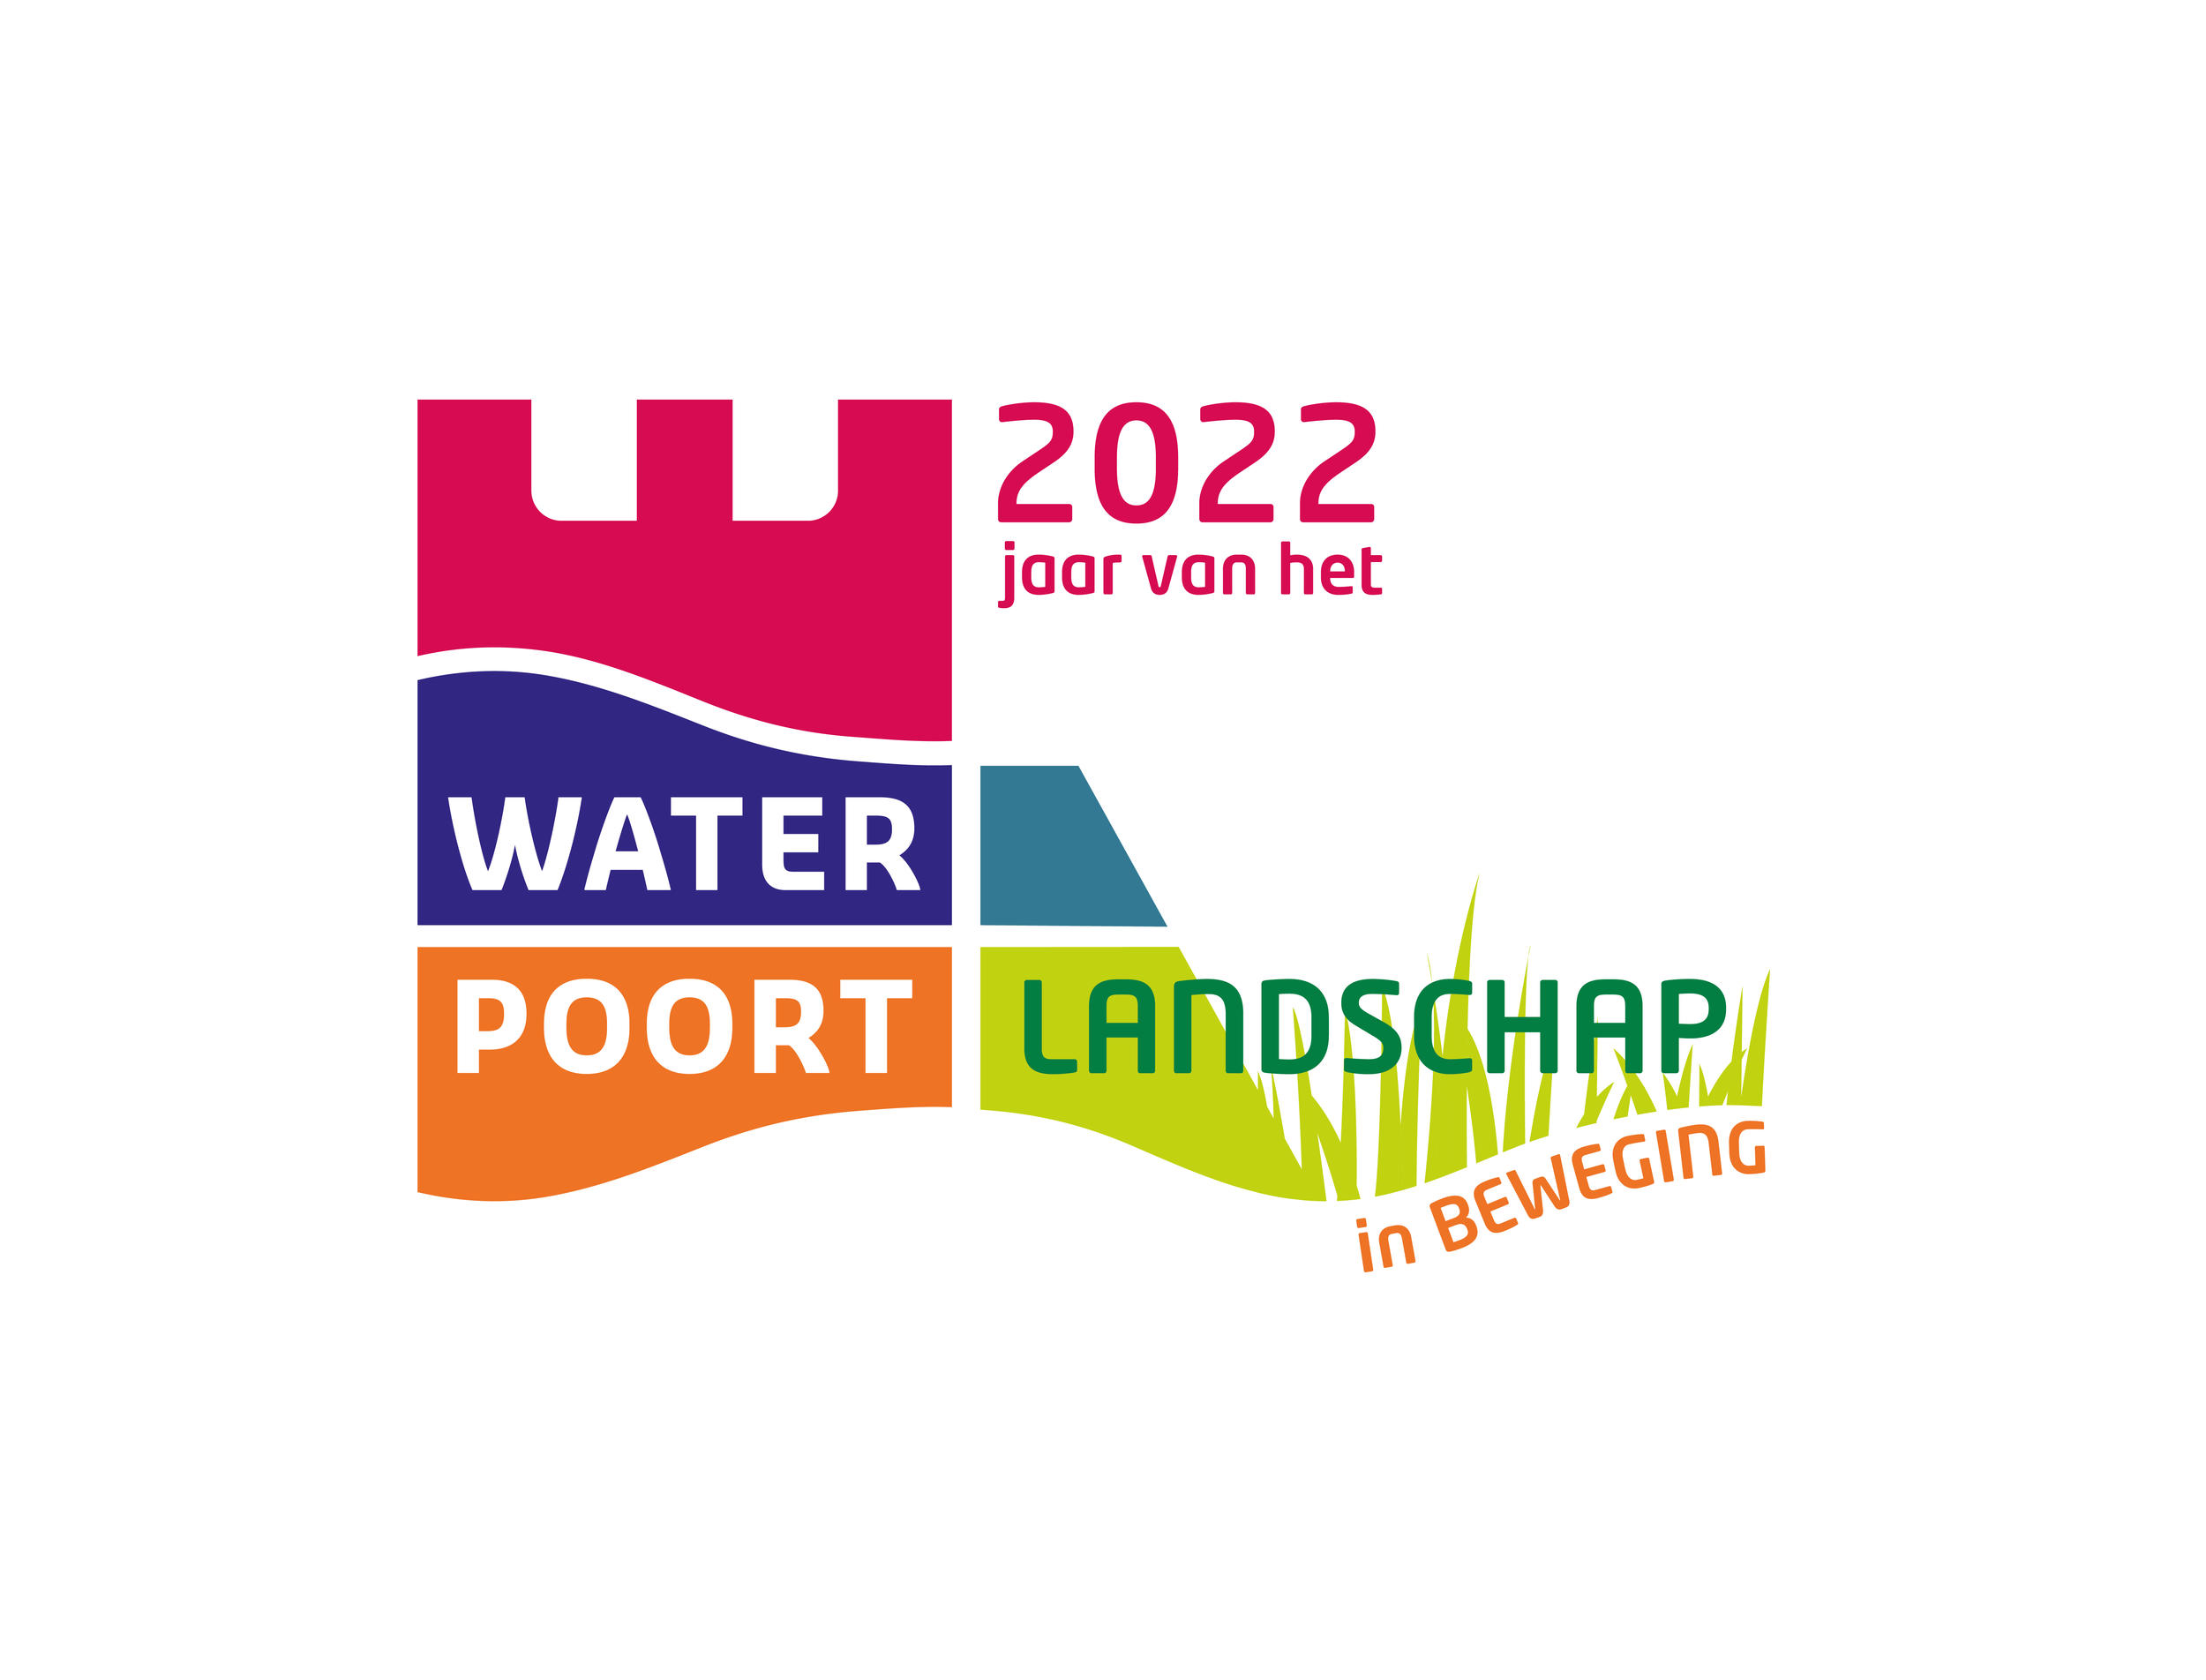 logo WP 2022 jaar van het LANDSCHAP in BEWEGING